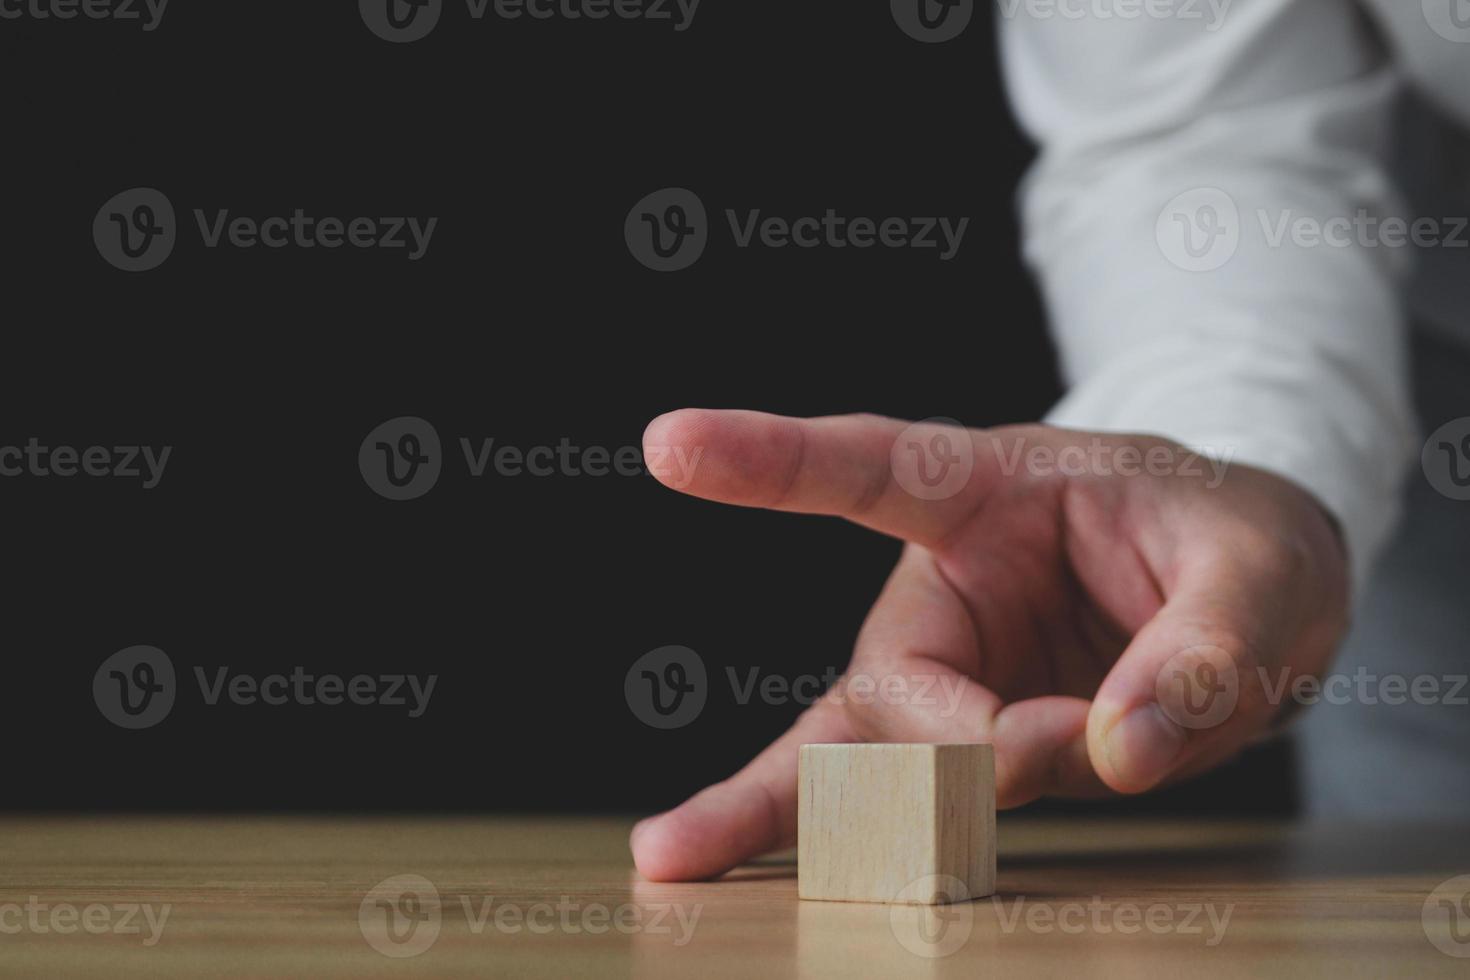 iemand gebruikt vingers om een houtblok te vegen. in het bedrijf toont het een verkoop of verlaging van een bedrijf om verlies te stoppen. strategie idee. dit close-up shot met een beetje focus. foto